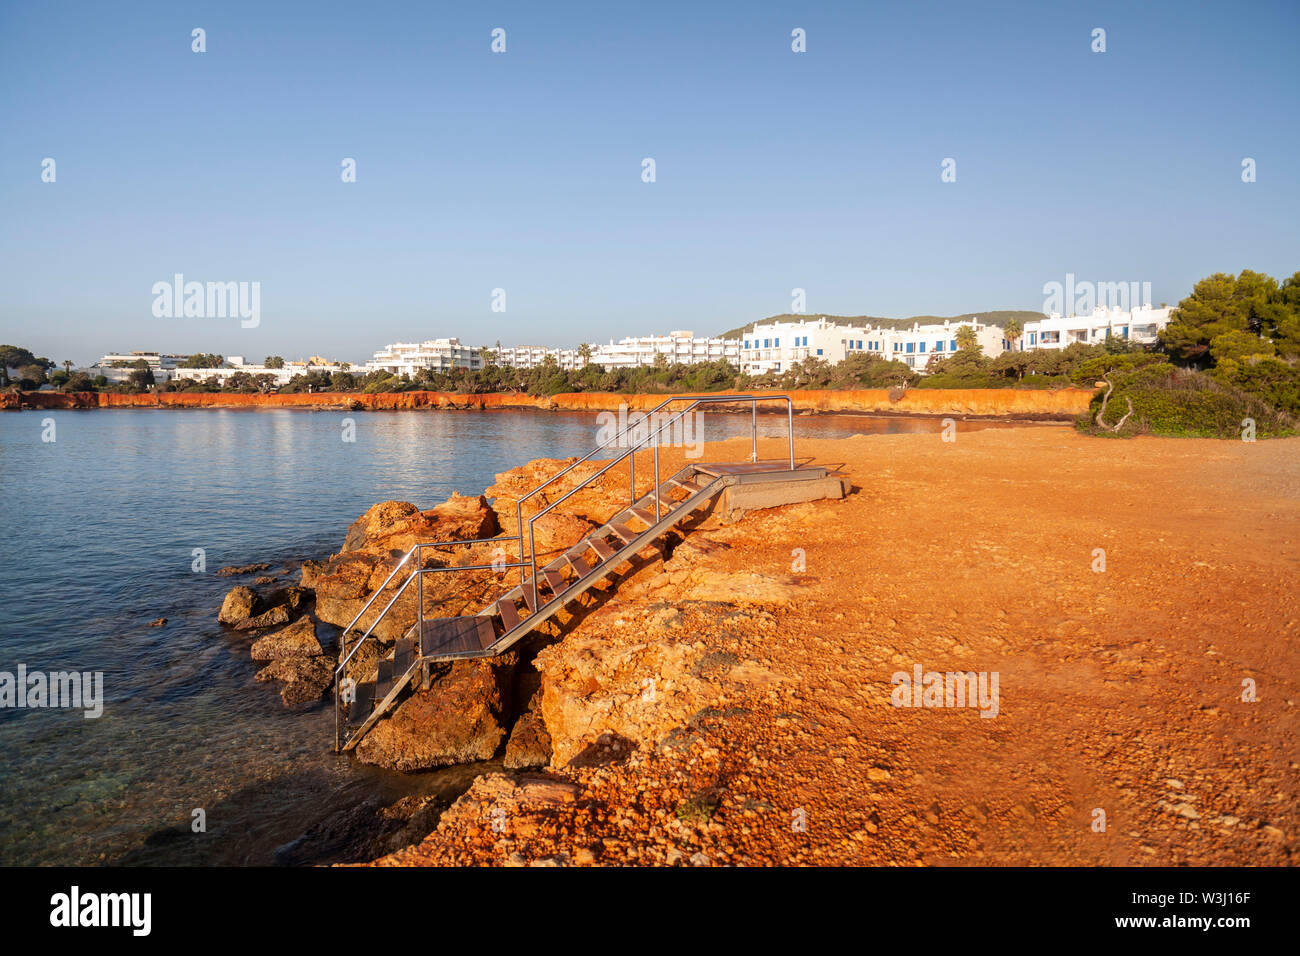 Santa Eularia des Riu, littoral, zones côtières, des rochers de couleur ocre. Vue de la Méditerranée, l'île d'Ibiza, Iles Baléares, Espagne. Banque D'Images